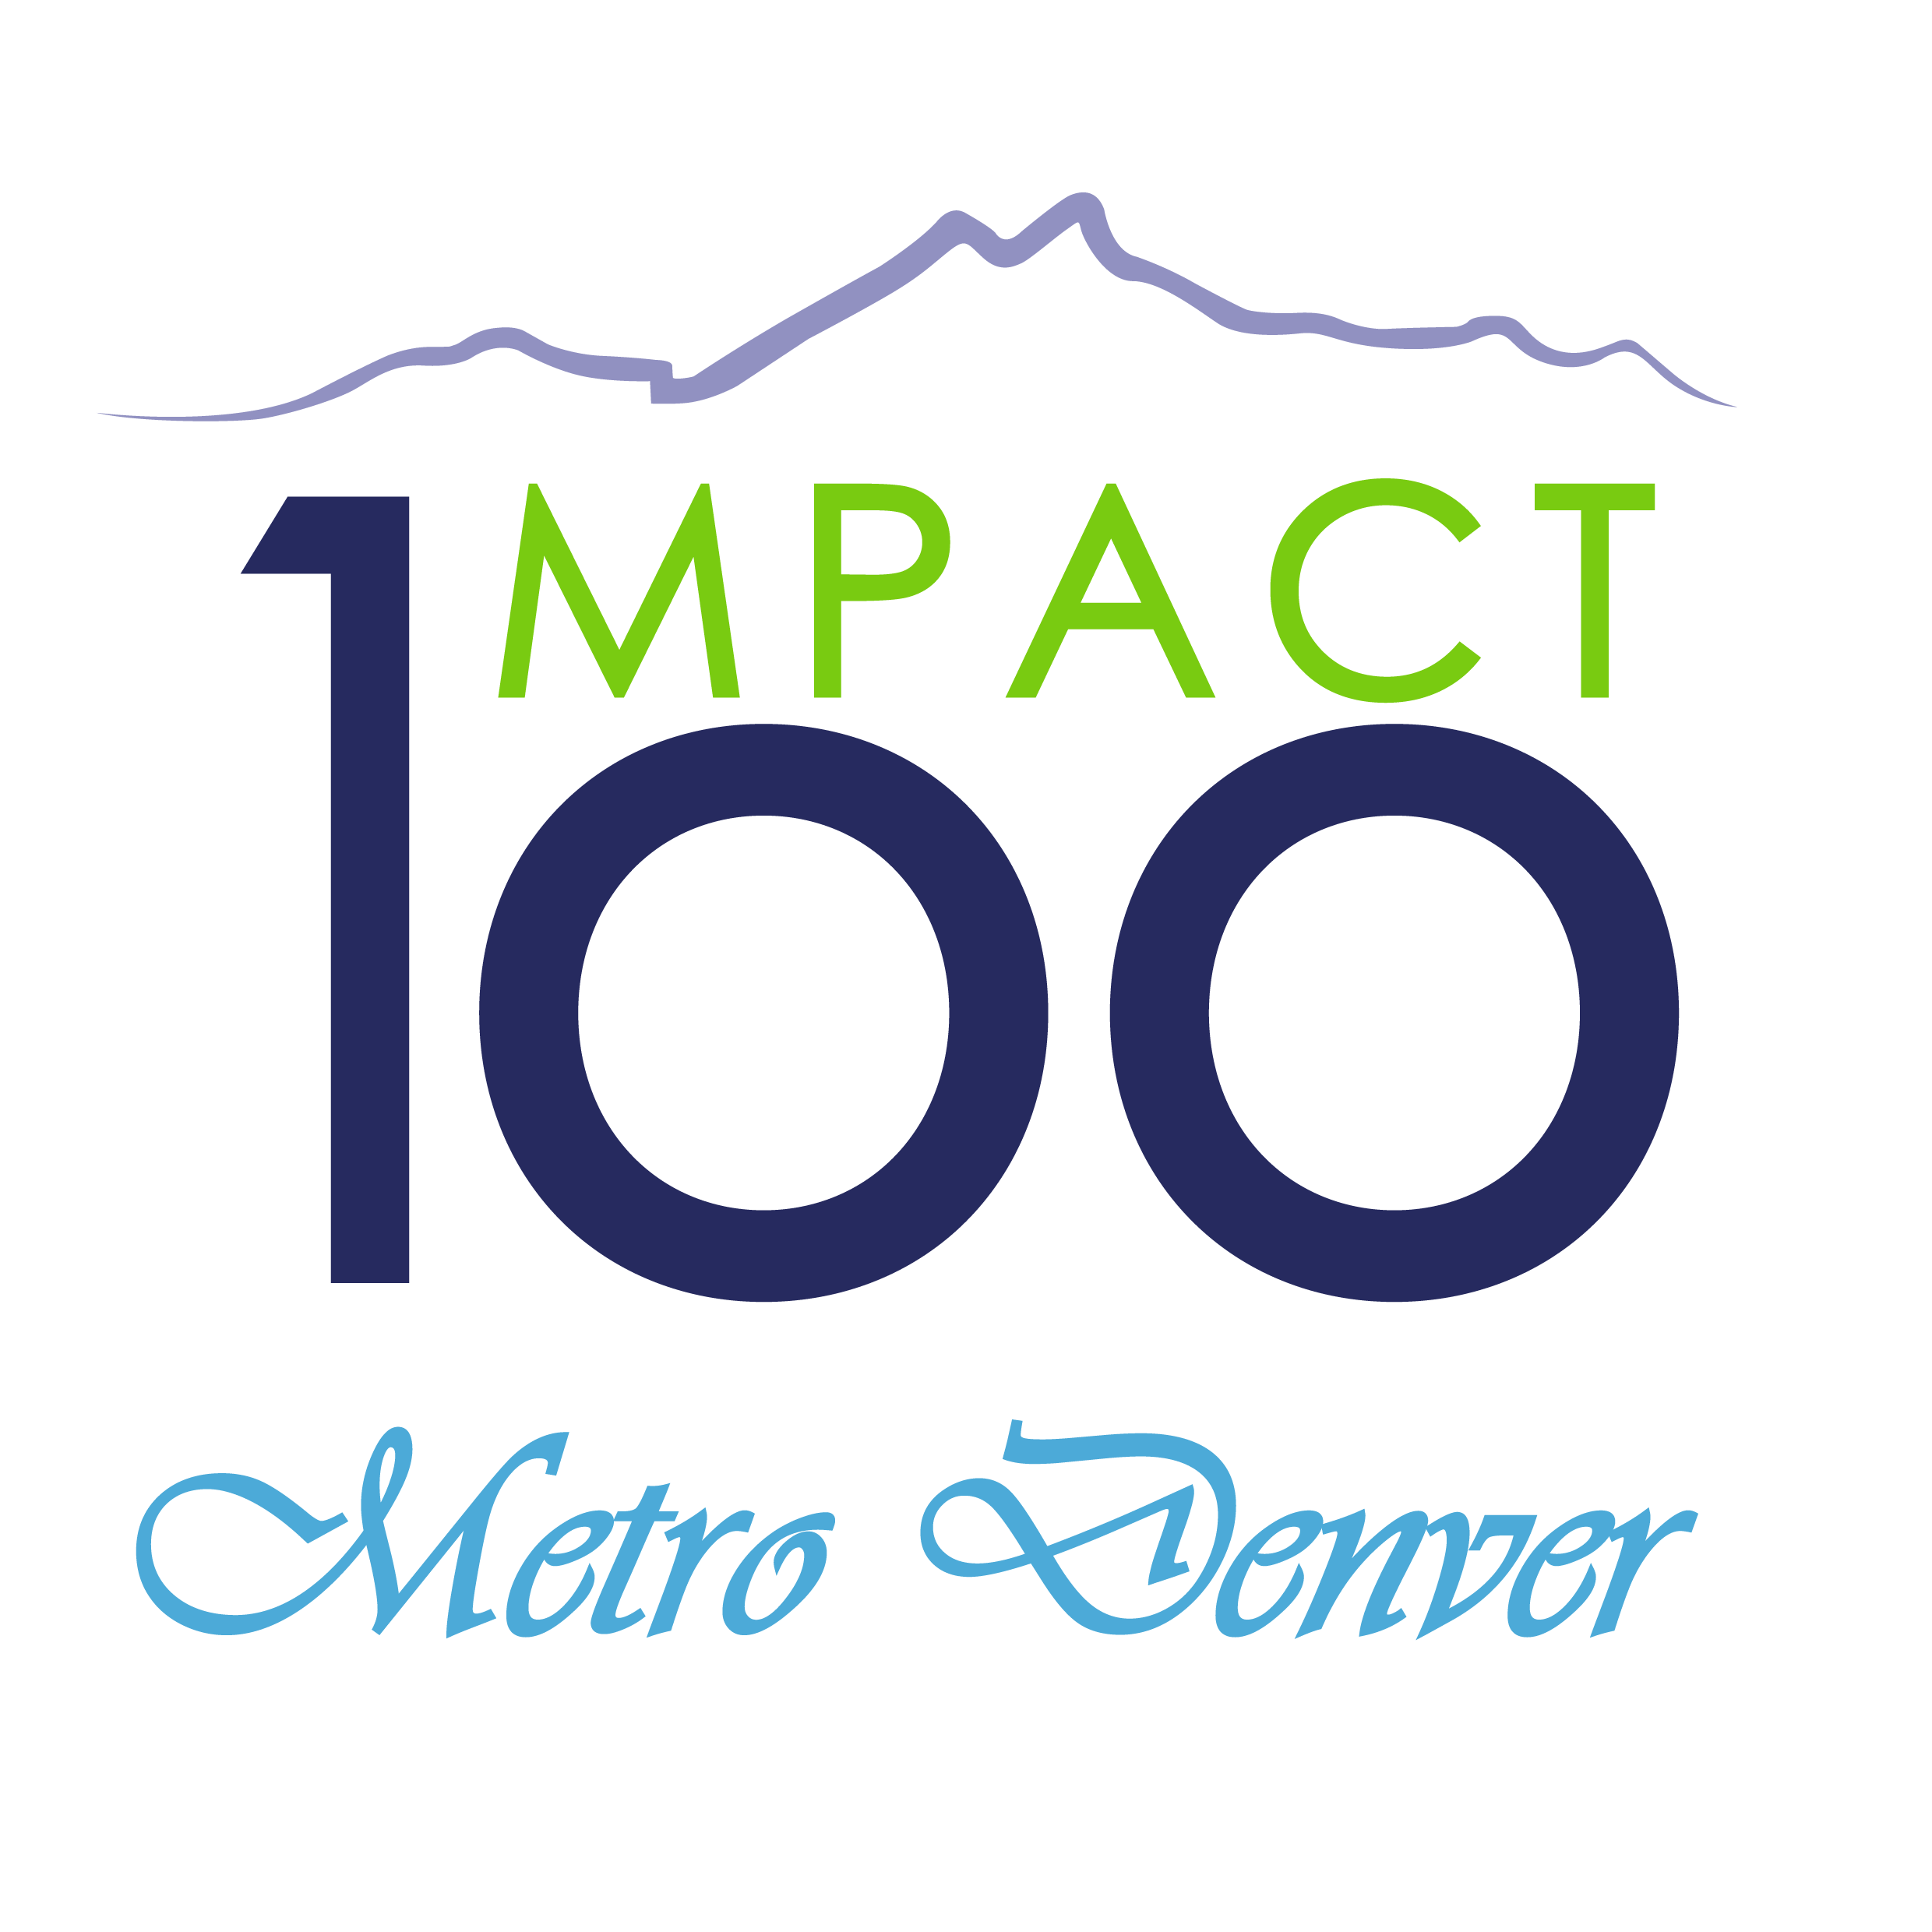 Impact100